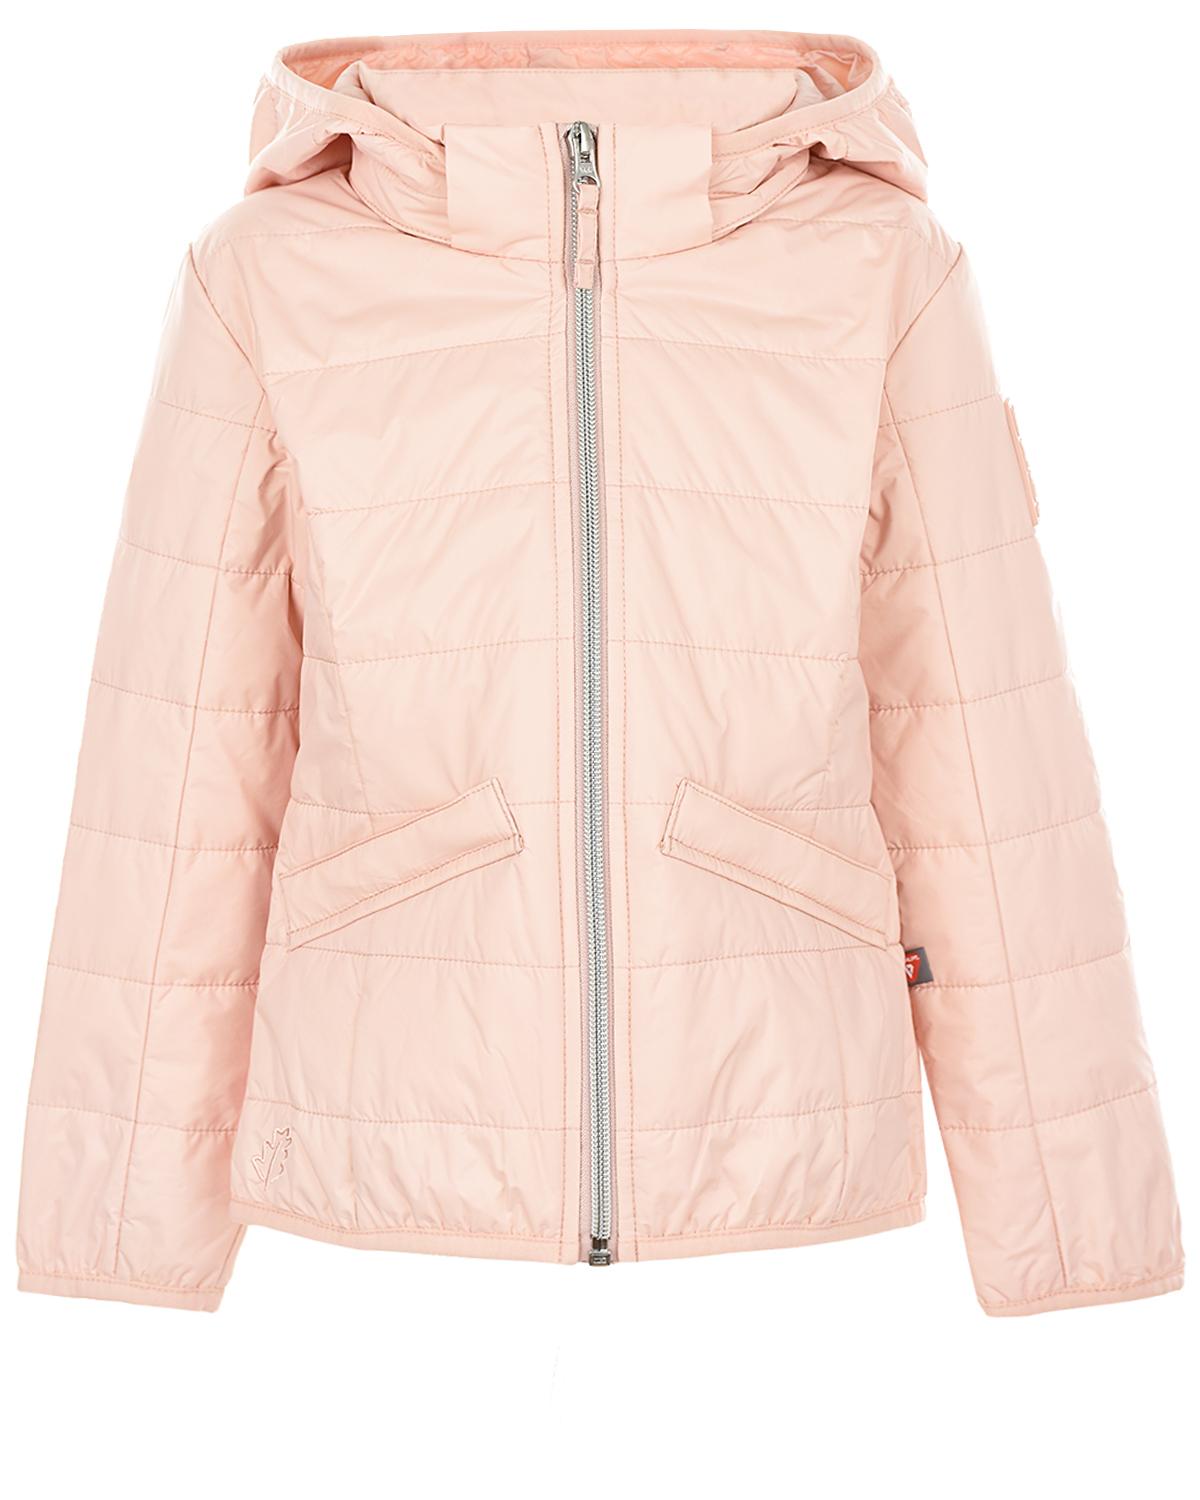 Стеганая куртка Lupaco, размер 128, цвет розовый - фото 1